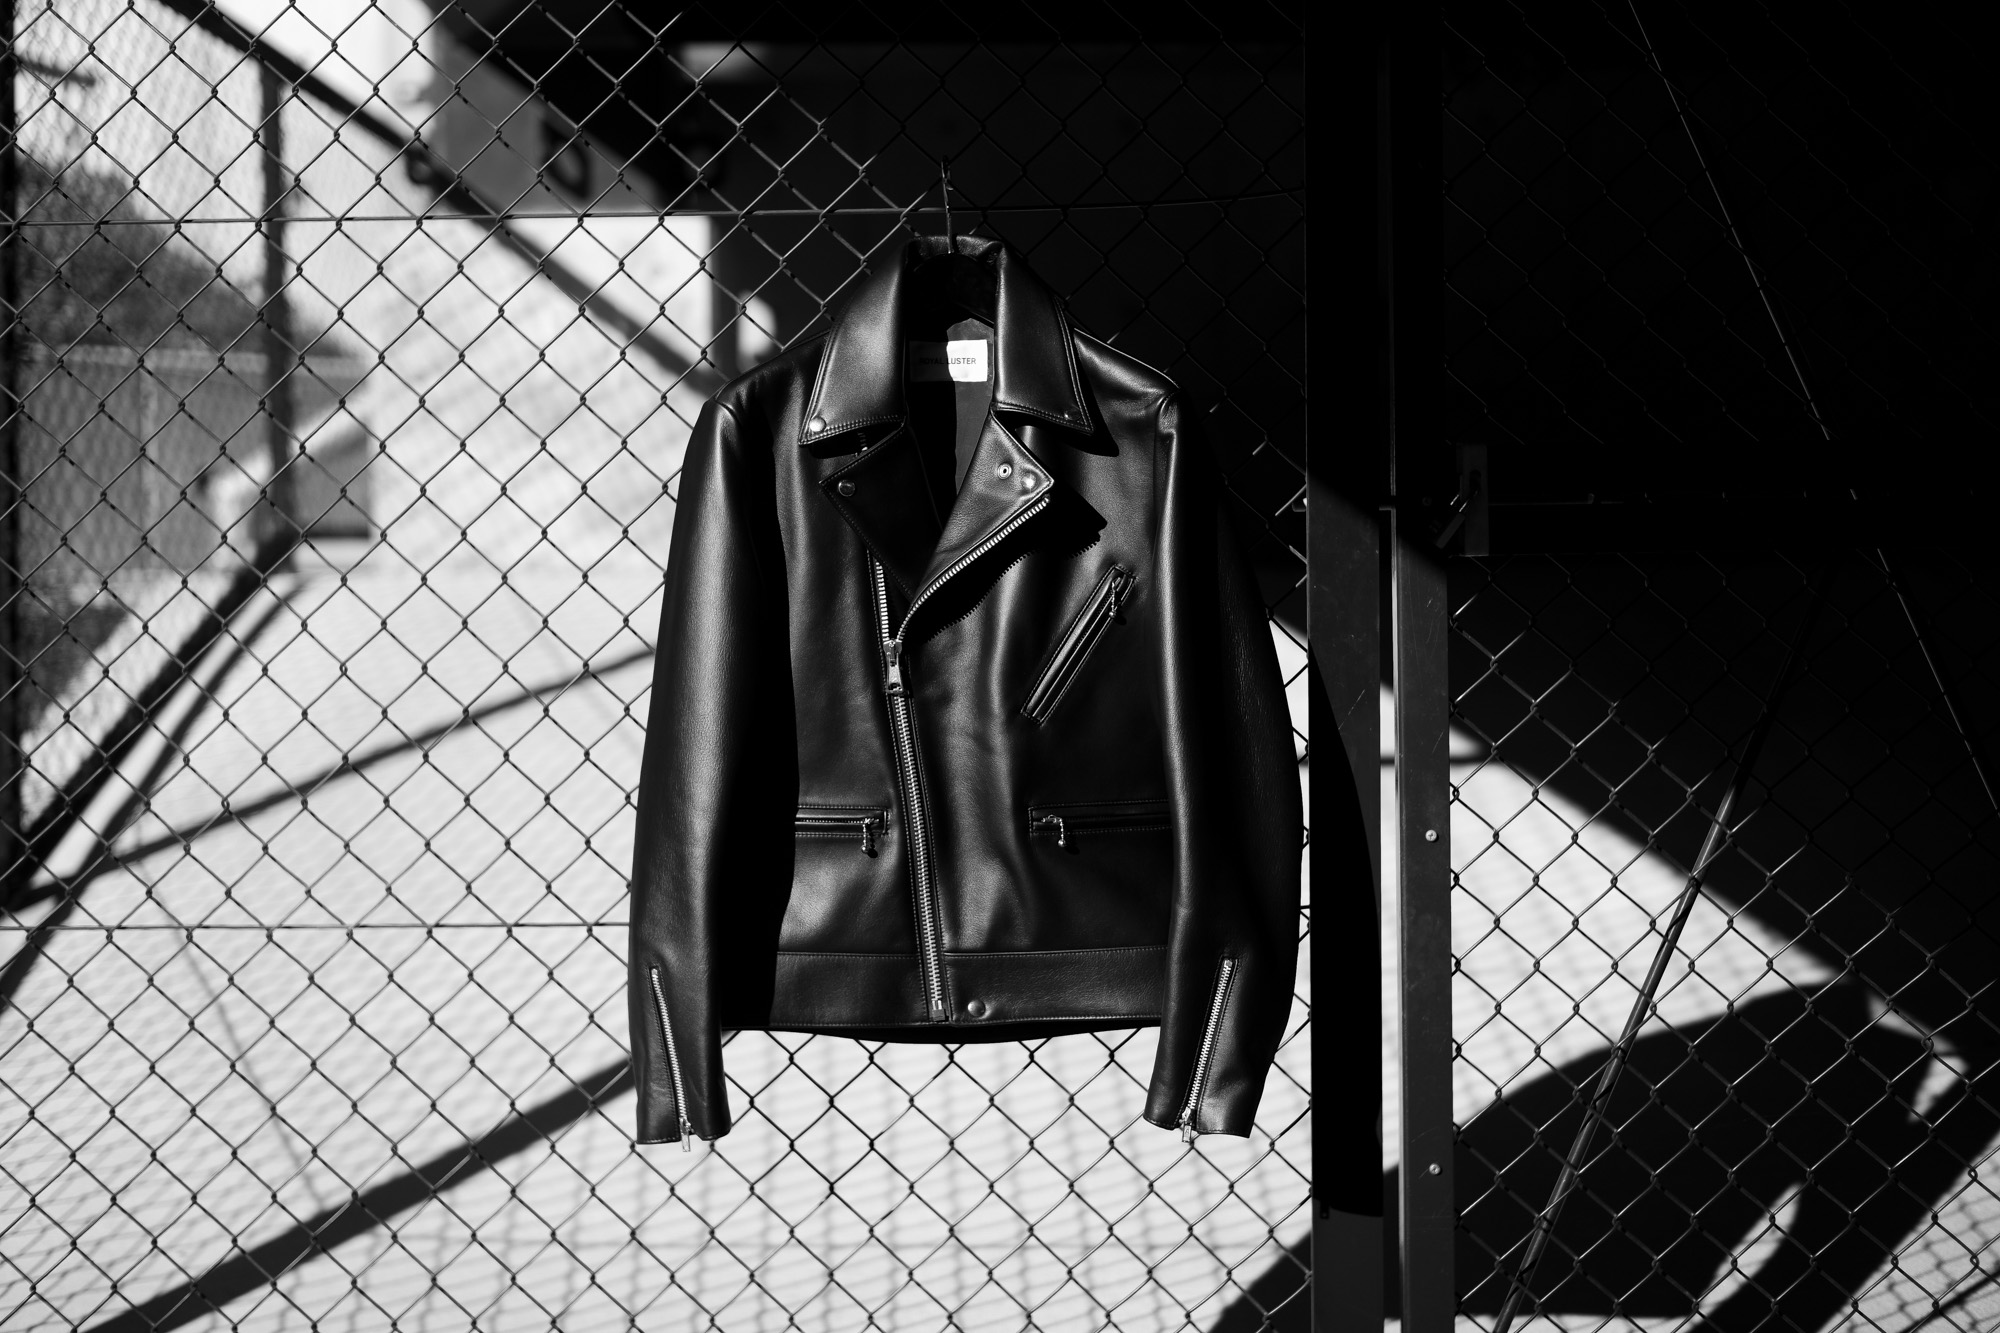 ROYAL LUSTER (ロイヤルラスター) Noah (ノア) DOUBLE RIDERS Calf Leather ダブルライダース ジャケット BLACK (ブラック) レザージャケット 愛知 名古屋 Alto e Diritto altoediritto アルトエデリット 発売開始 2022年11月20日土曜 12時～ ロイヤルラスターとは【最上の輝き】の意。ロック、パンクス、サヴィルロウスタイルまで、深い歴史のあるブリティッシュカルチャーにインスパイアされたラグジュアリーなモダンブリティシュスタイルを提案します。テーラーリングの源流である英国のエッセンスをレザーアイテムに組み込むことで、立体的でシャープなカッティングにより体を美しく包み込みます。熟練された職人により一切の妥協なく作らたプロダクトは厳選された最高級の素材のみを使用し、究極的にミニマルな男らしいラグジュアリーを表現しています。ロイヤルラスターは熟練された職人によるテーラーリングと最高峰のレザーを融合することを一つの解としています。プロダクトに携わる職人も一握りの熟練者に限られ生産数がごく僅かの為、殆ど市場に出回ることはありません。使い込むほどに上品な色気を纏うプロダクトは、着用する方に【最上の輝き】を与えてくれることを祈って作られたブランドなのです。Noah (ノア) 旧約聖書の創世記にある洪水物語の主人公。正義の人と神に認められたとされ、当モデルはその名を冠した。無駄のないクラシカルなダブルブレストのモーターサイクルジャケット。テーラーリングテクニックを踏襲したカッティング。フロント3ジップポケット(＋隠しポケット)ジップカフス、サイドアジャスター英国CLIX(クリックス)ファスナーを使用。